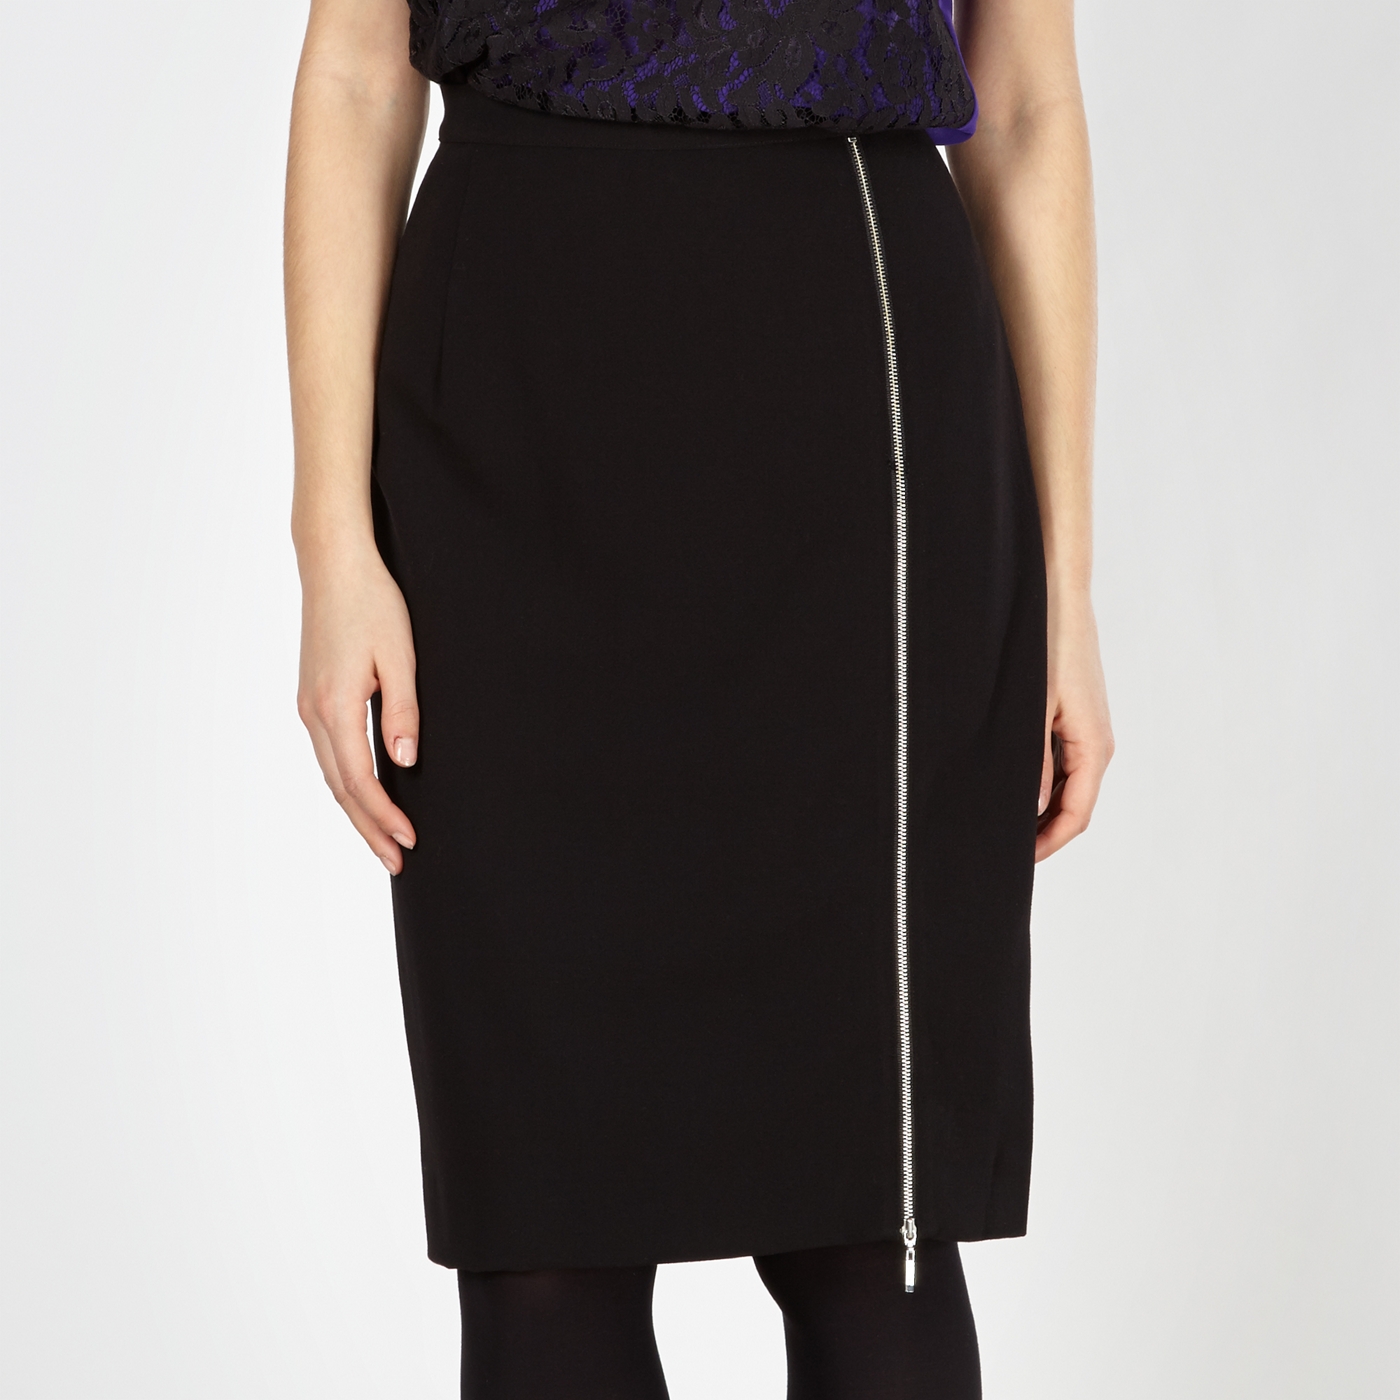 Preen/EDITION Designer black lace insert skirt